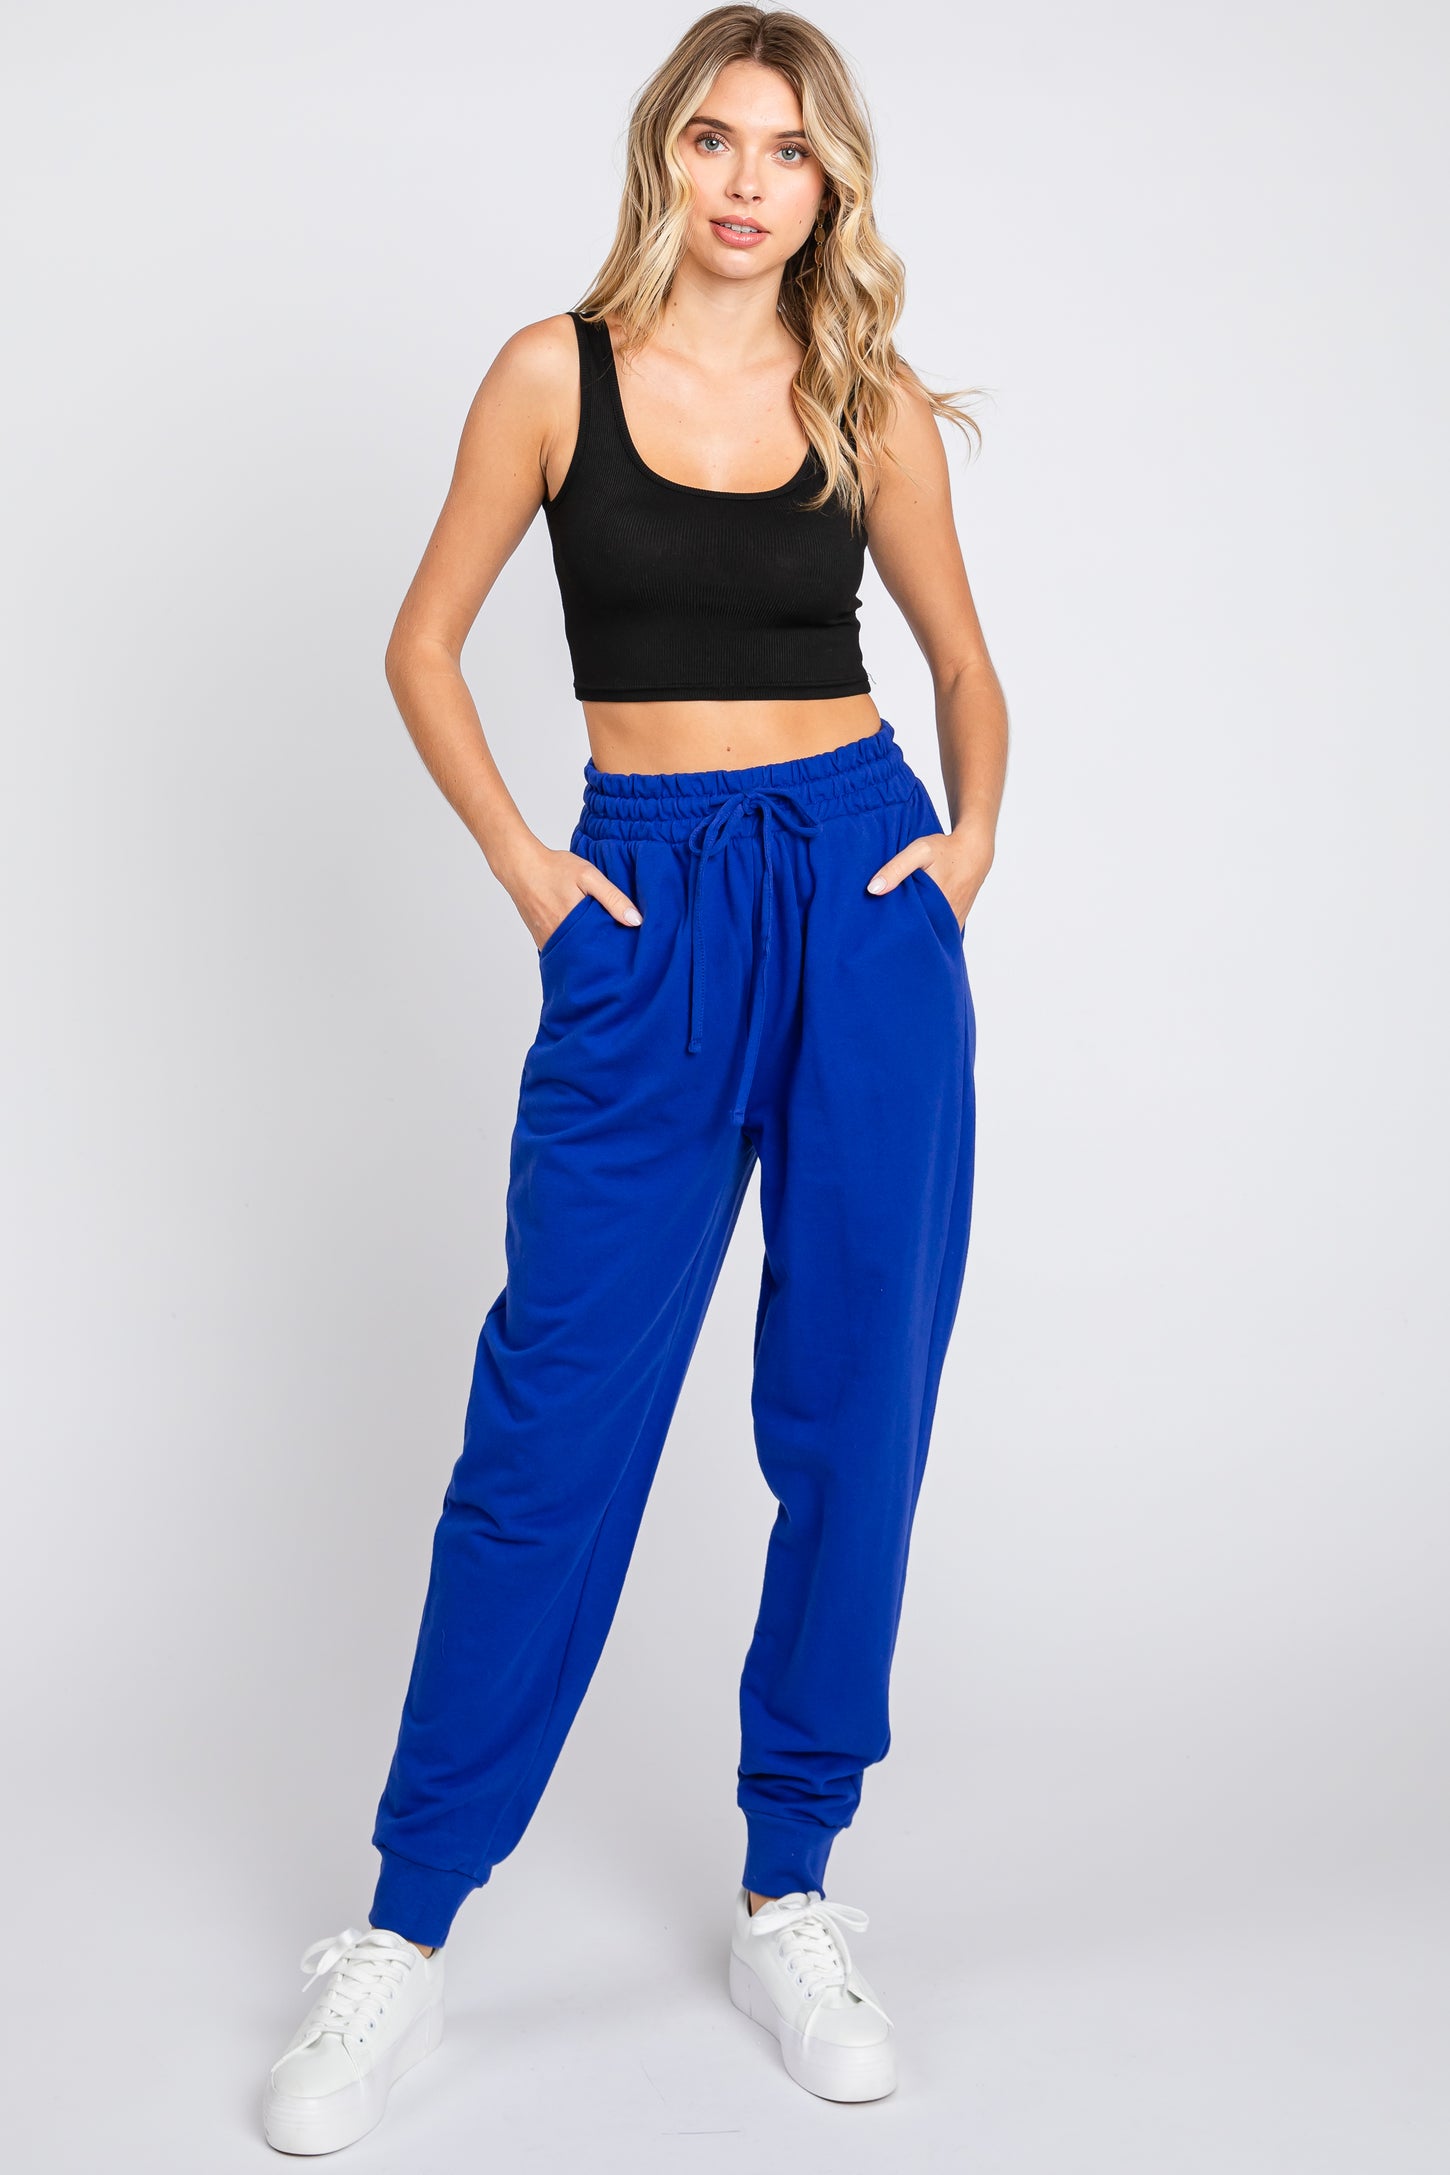 Royal Blue Basic Drawstring Sweatpants– PinkBlush